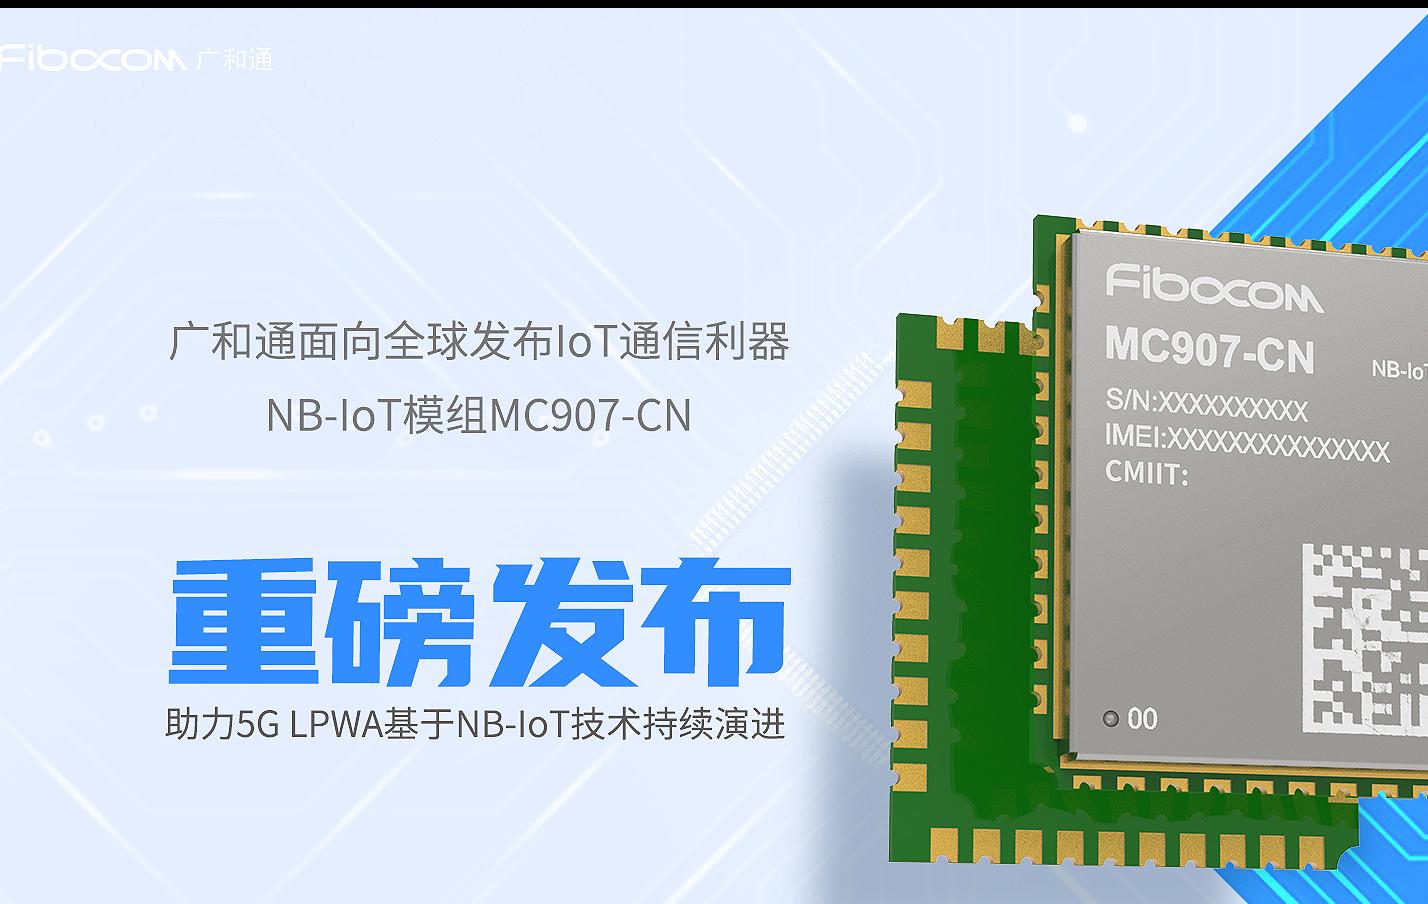 广和通NB-IoT模组MC907-CN正式发布，领跑中国LPWAN市场